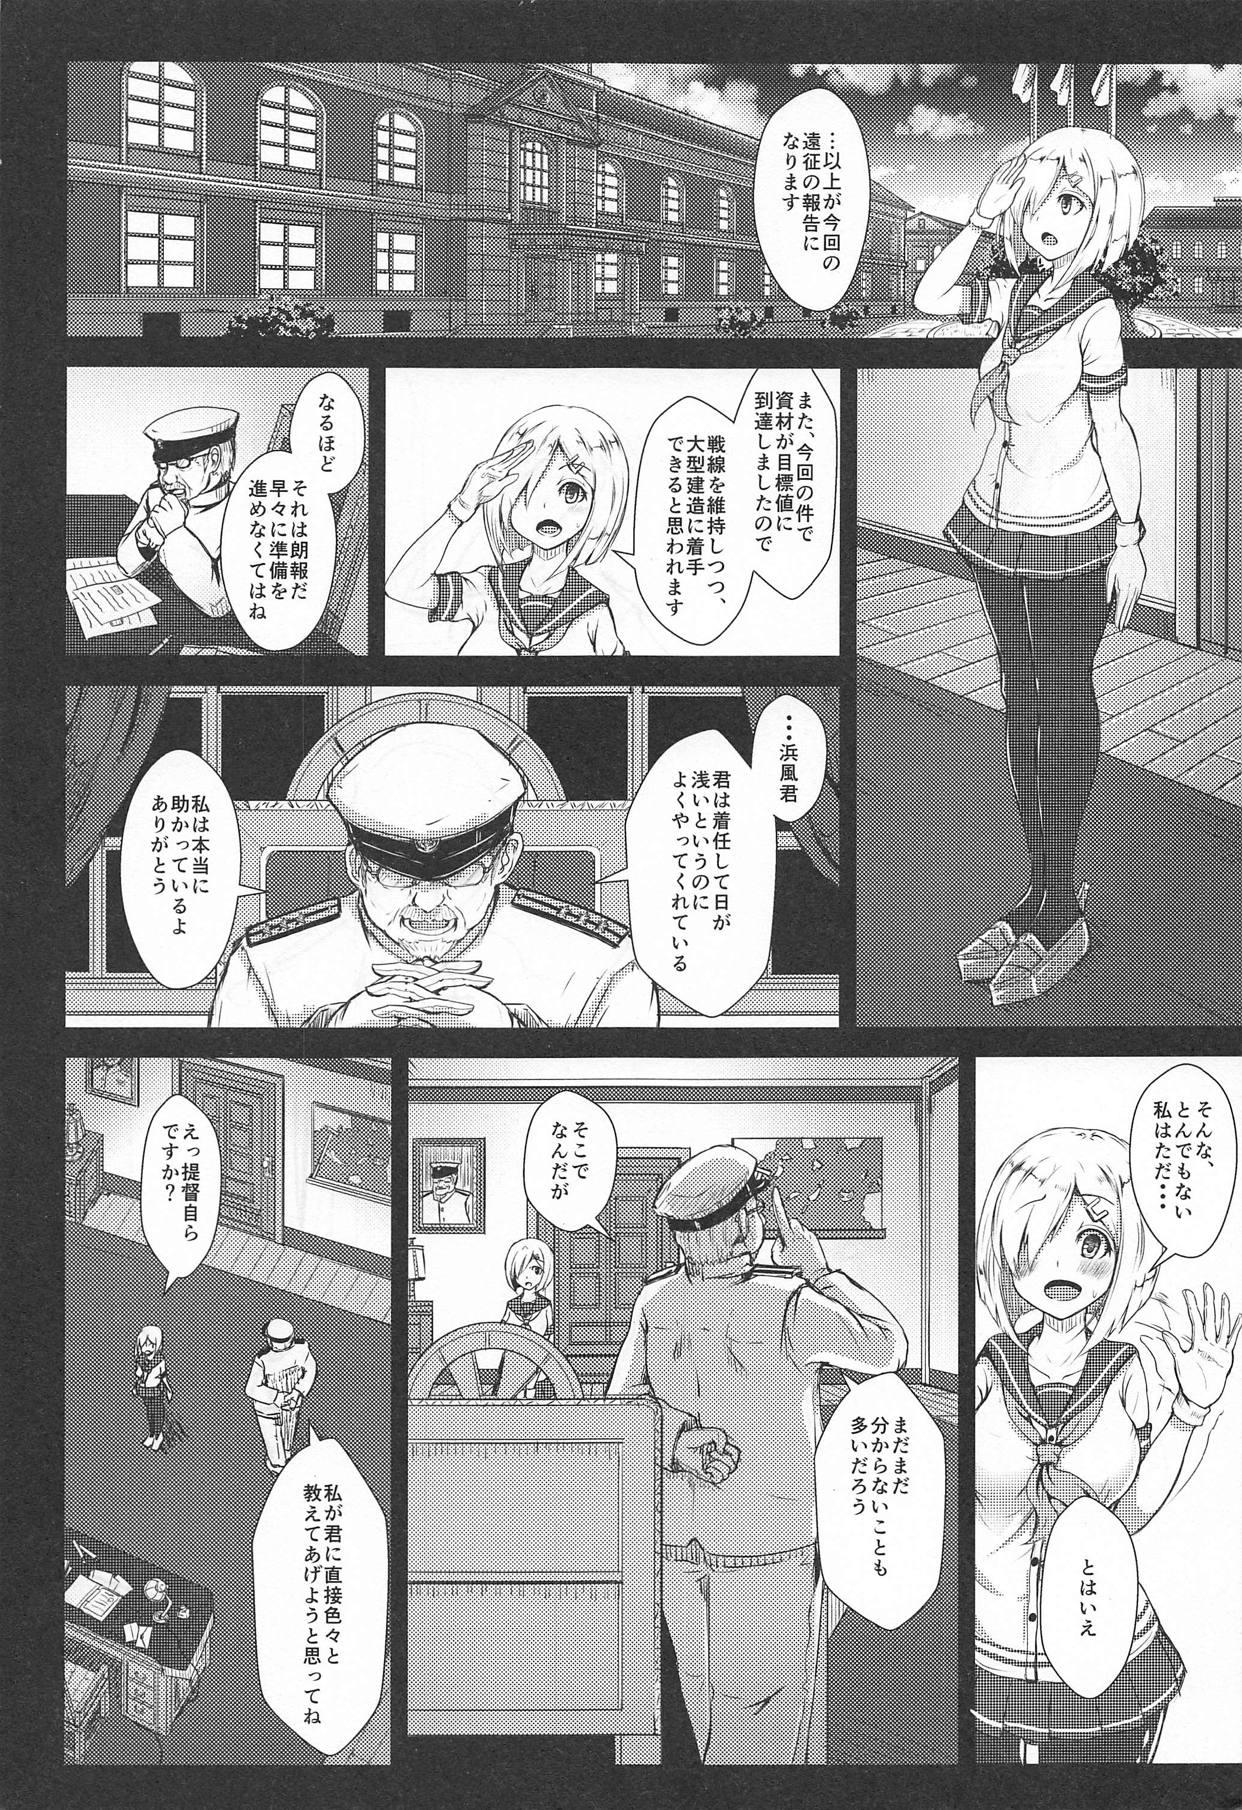 Ginger Majime na Hamakaze ga Teitoku kara Iroiro to Osowaru - Kantai collection Bokep - Page 2